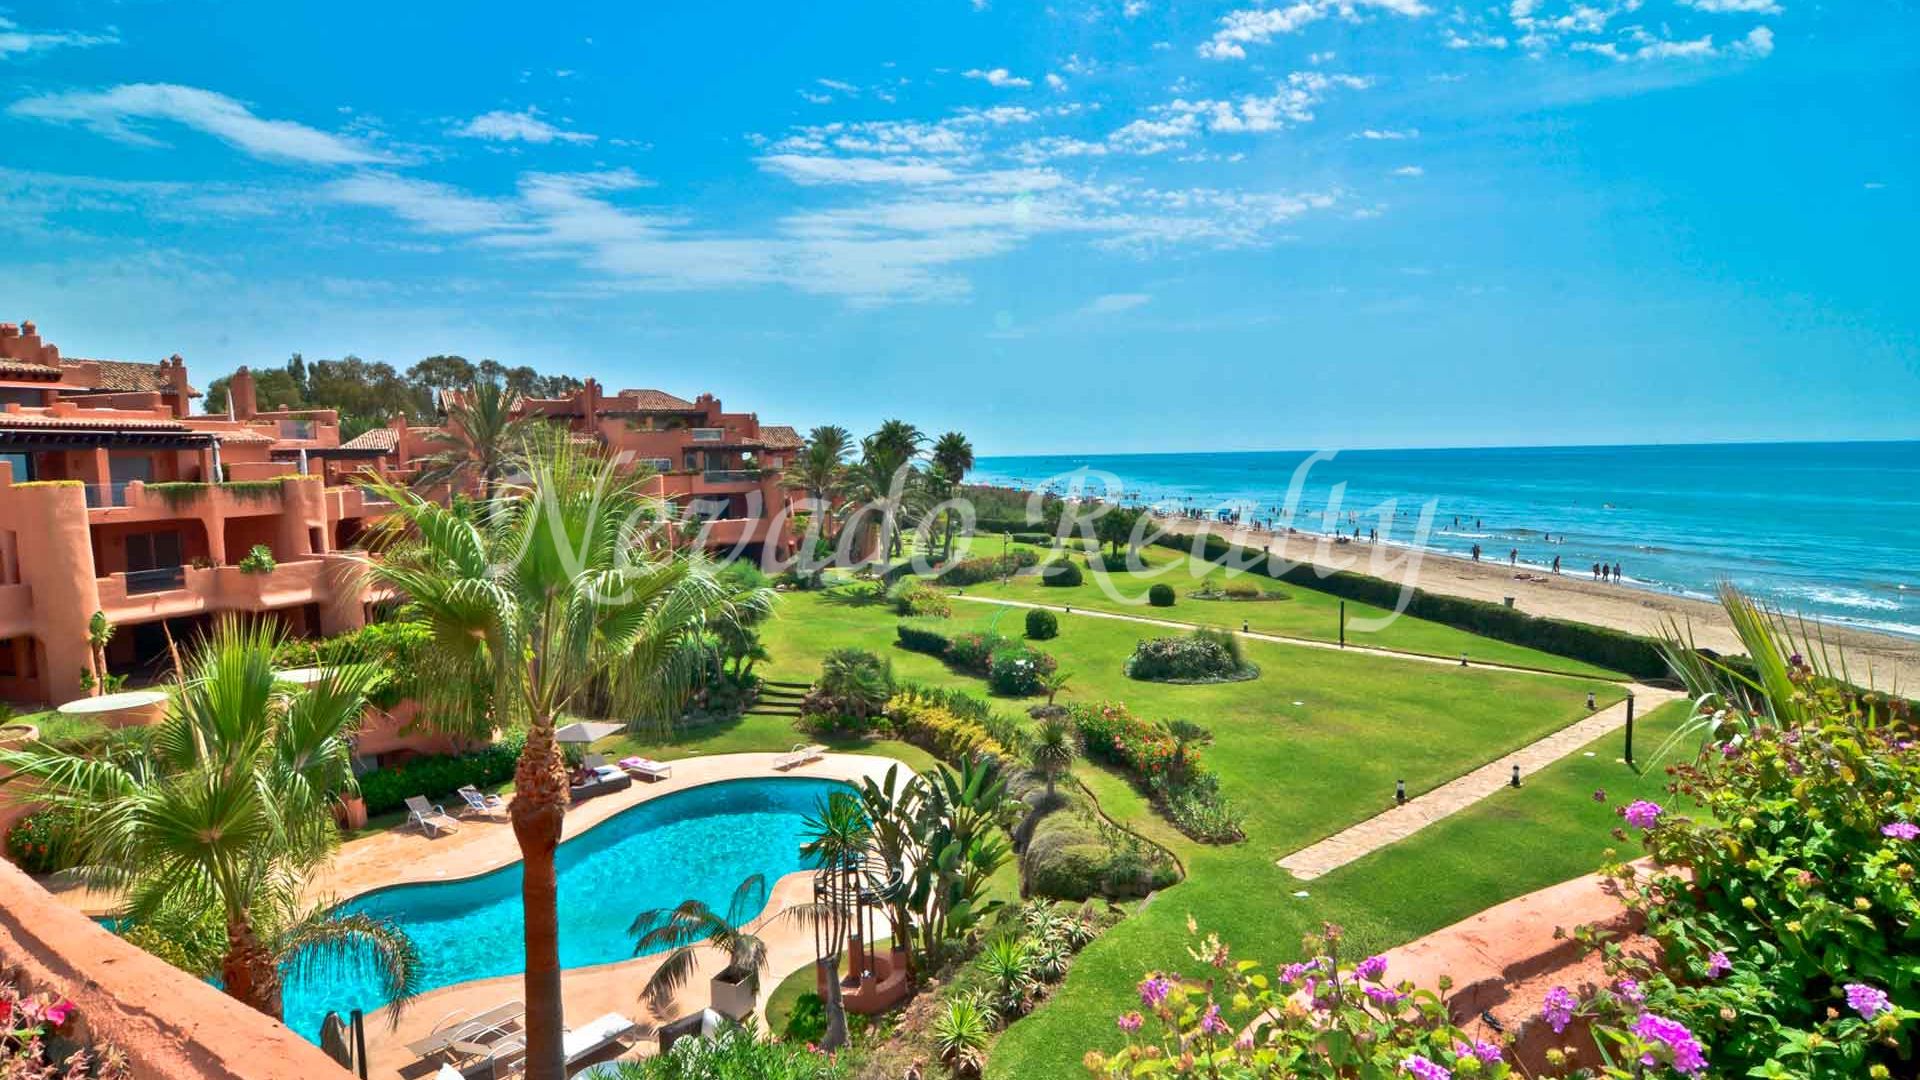 													Penthouse en première ligne de plage à Marbella à vendre
											